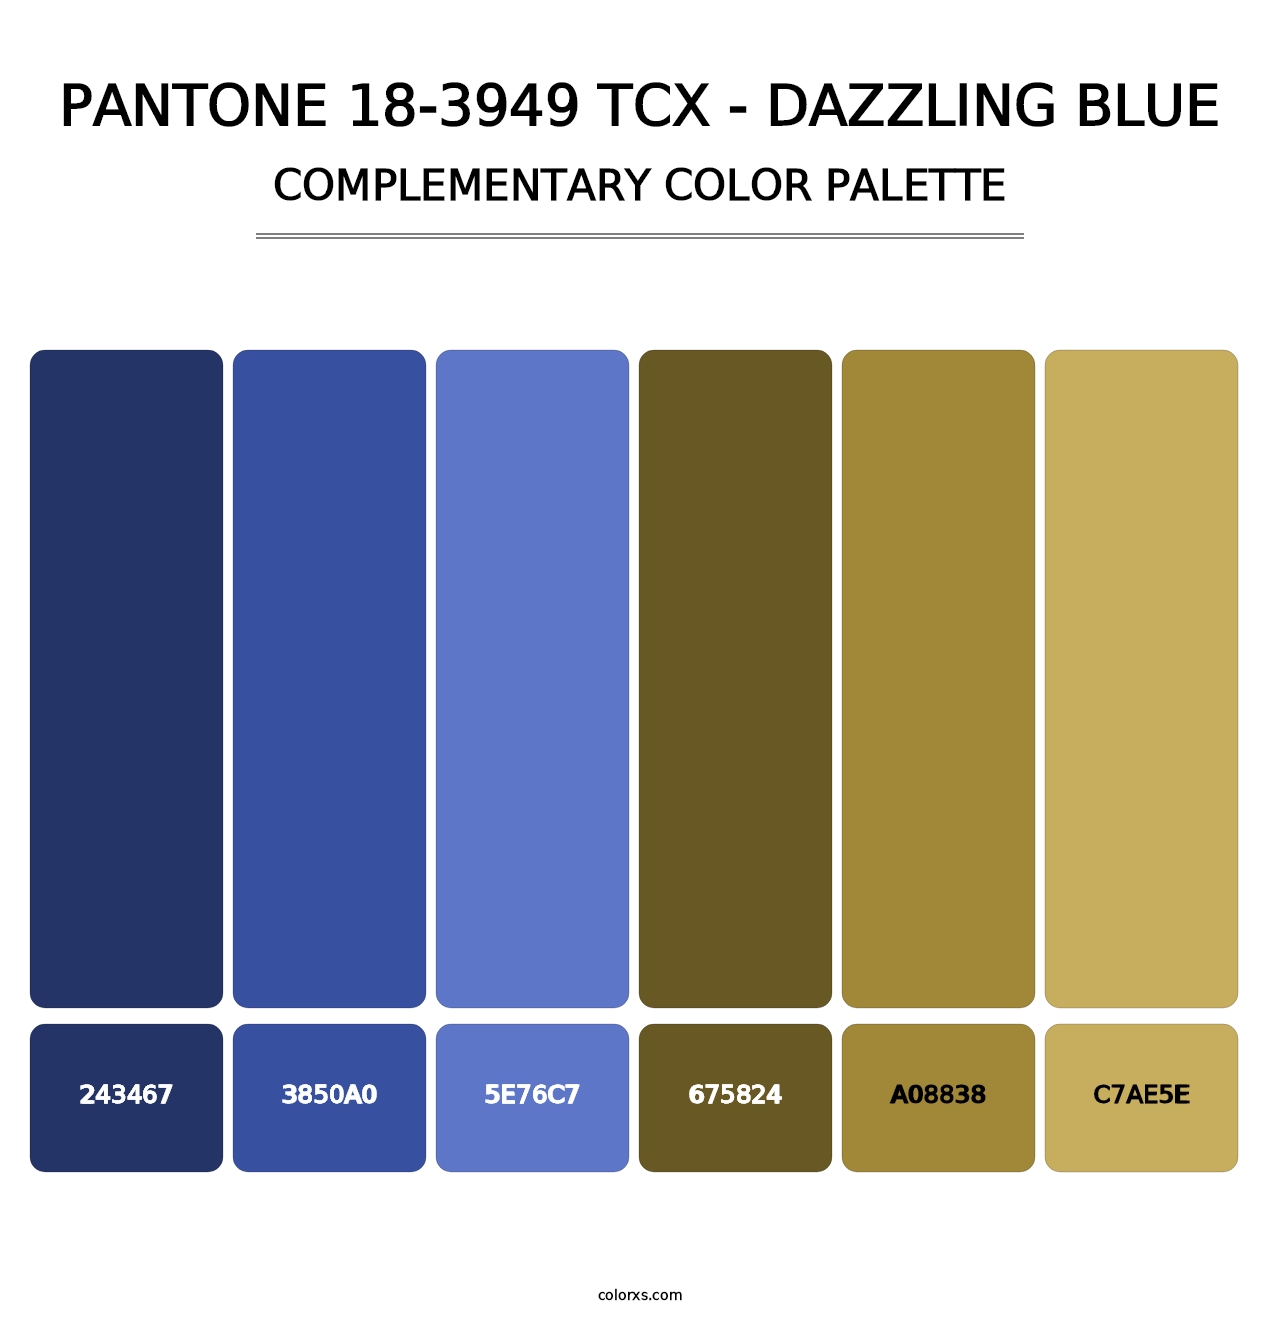 PANTONE 18-3949 TCX - Dazzling Blue - Complementary Color Palette